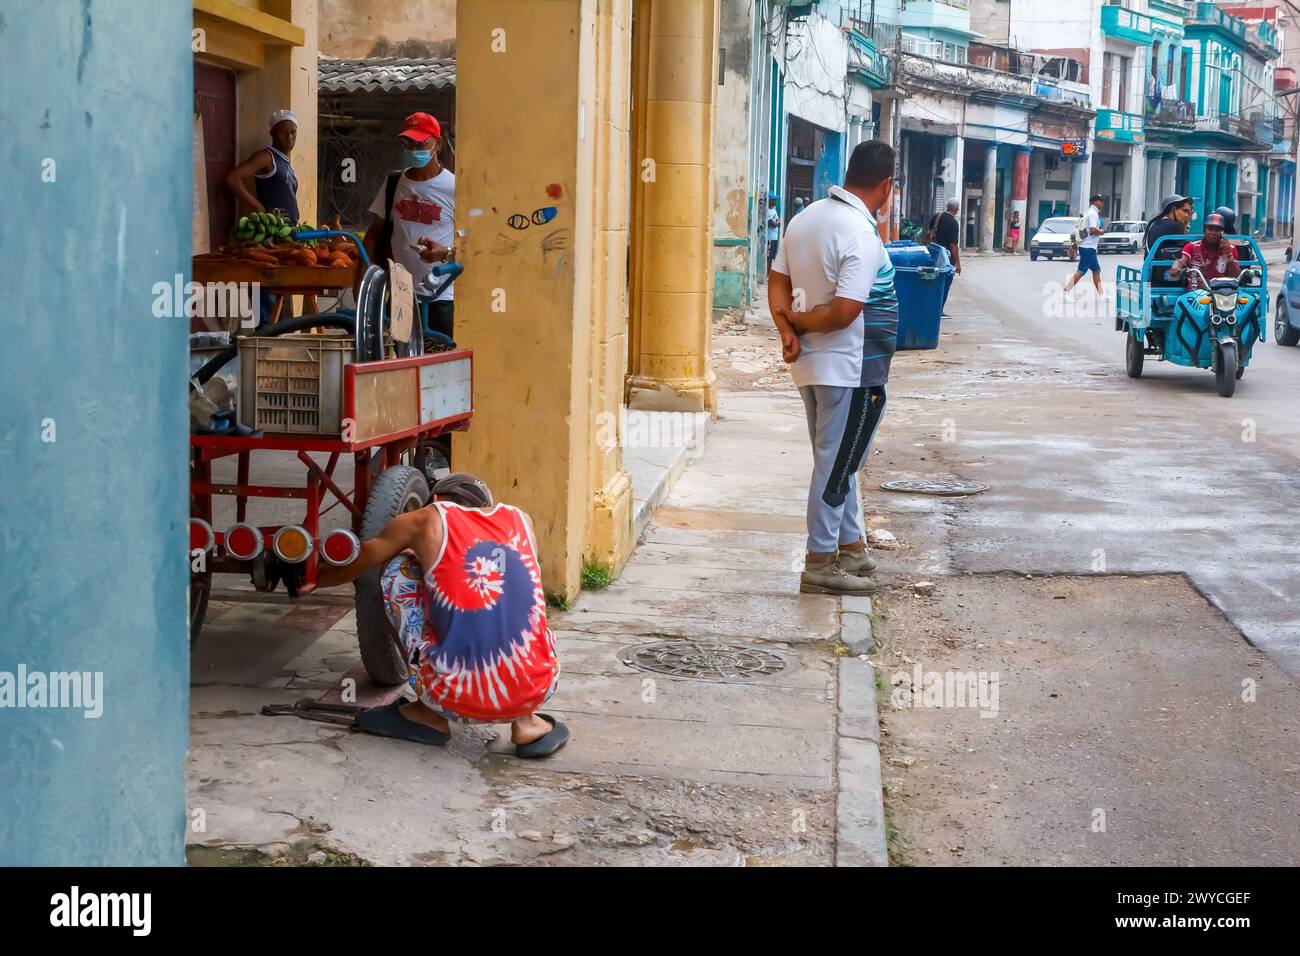 cuban man repairing a wheel of a rustic cart in Havana, Cuba Stock Photo